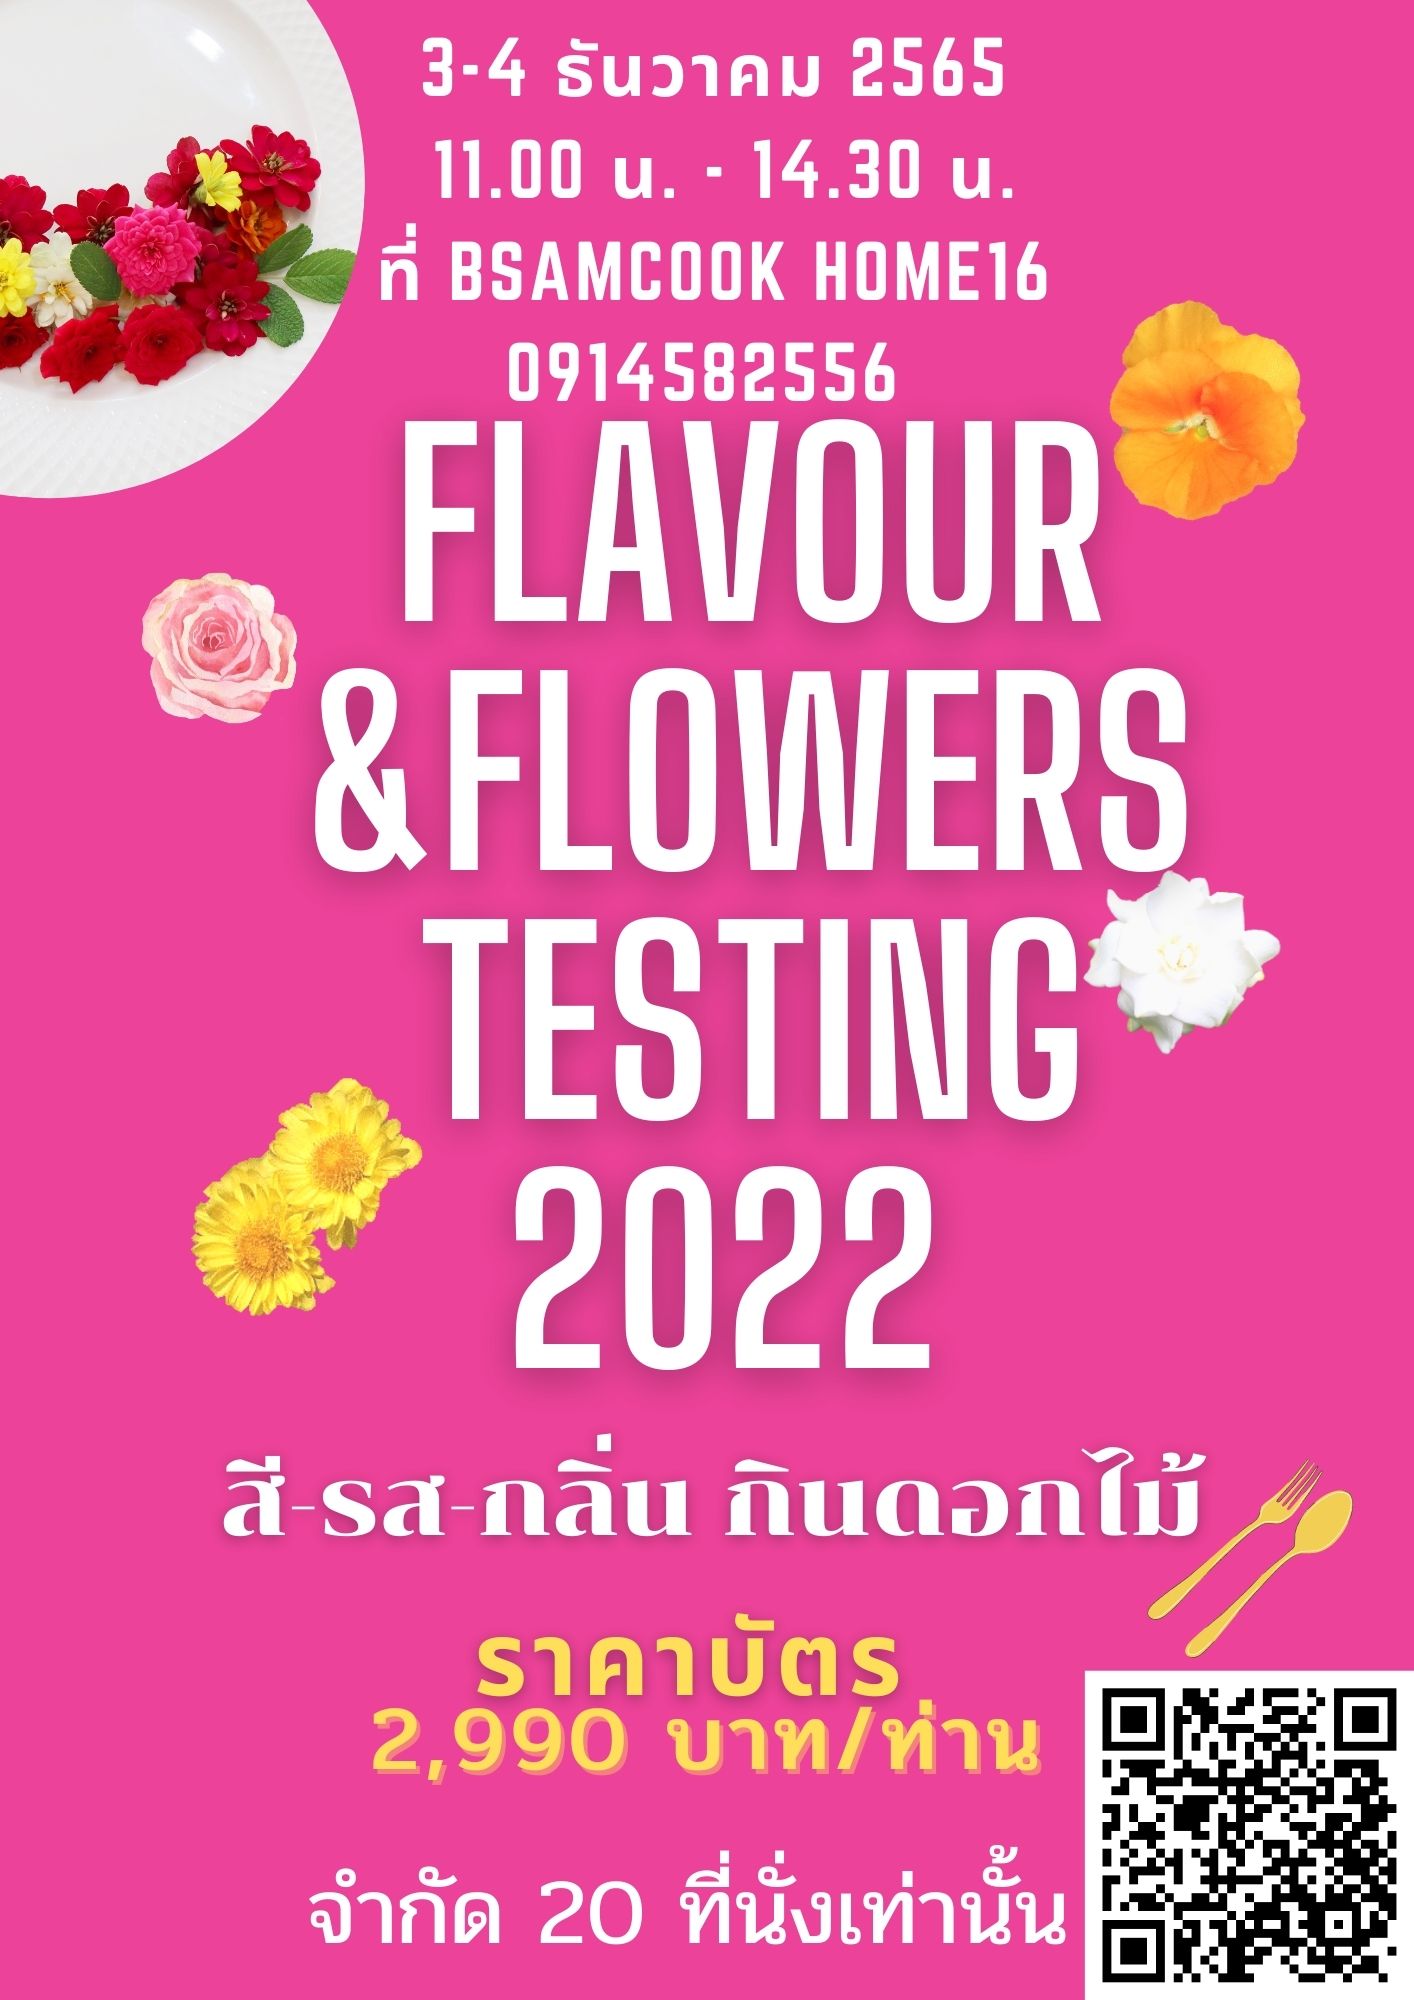 สี-รส-กลิ่น กินดอกไม้ Flavour & Flowers Testing 2022 ใน เชียงใหม่ - 3 ธันวาคม 2565